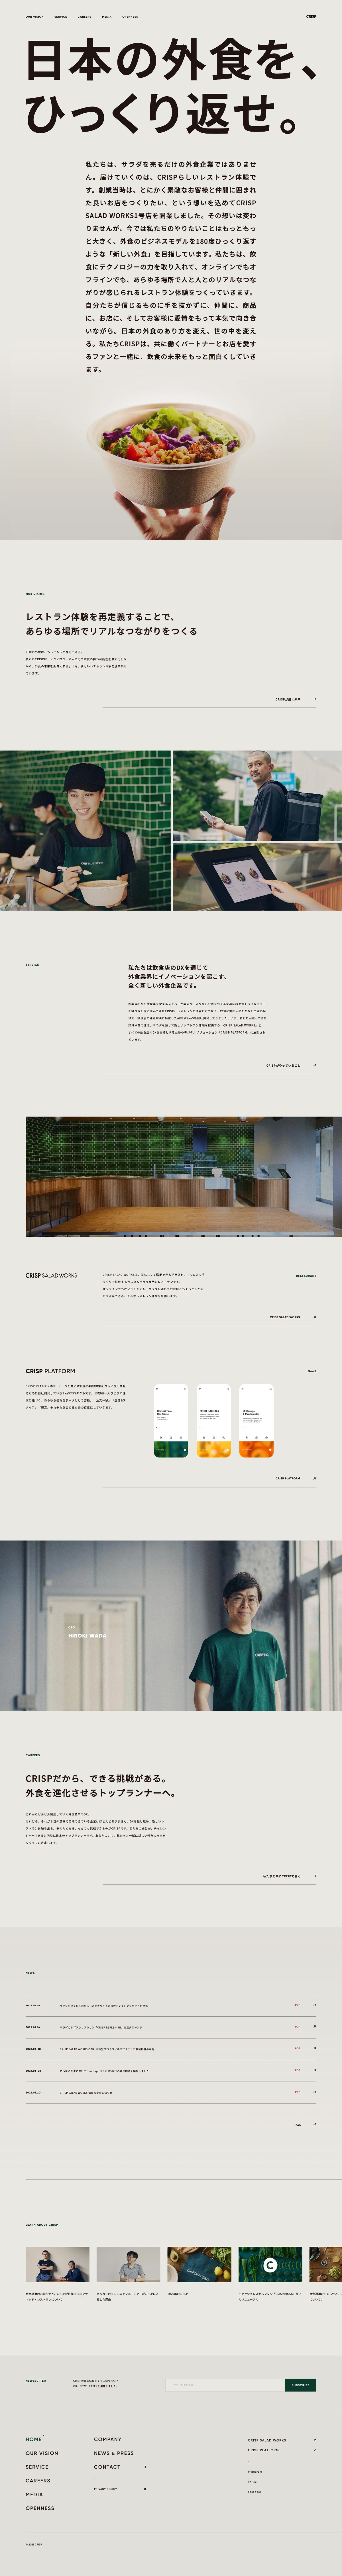 飲食店・カフェ ホームページ制作 WEBデザイン参考ギャラリー CRISP